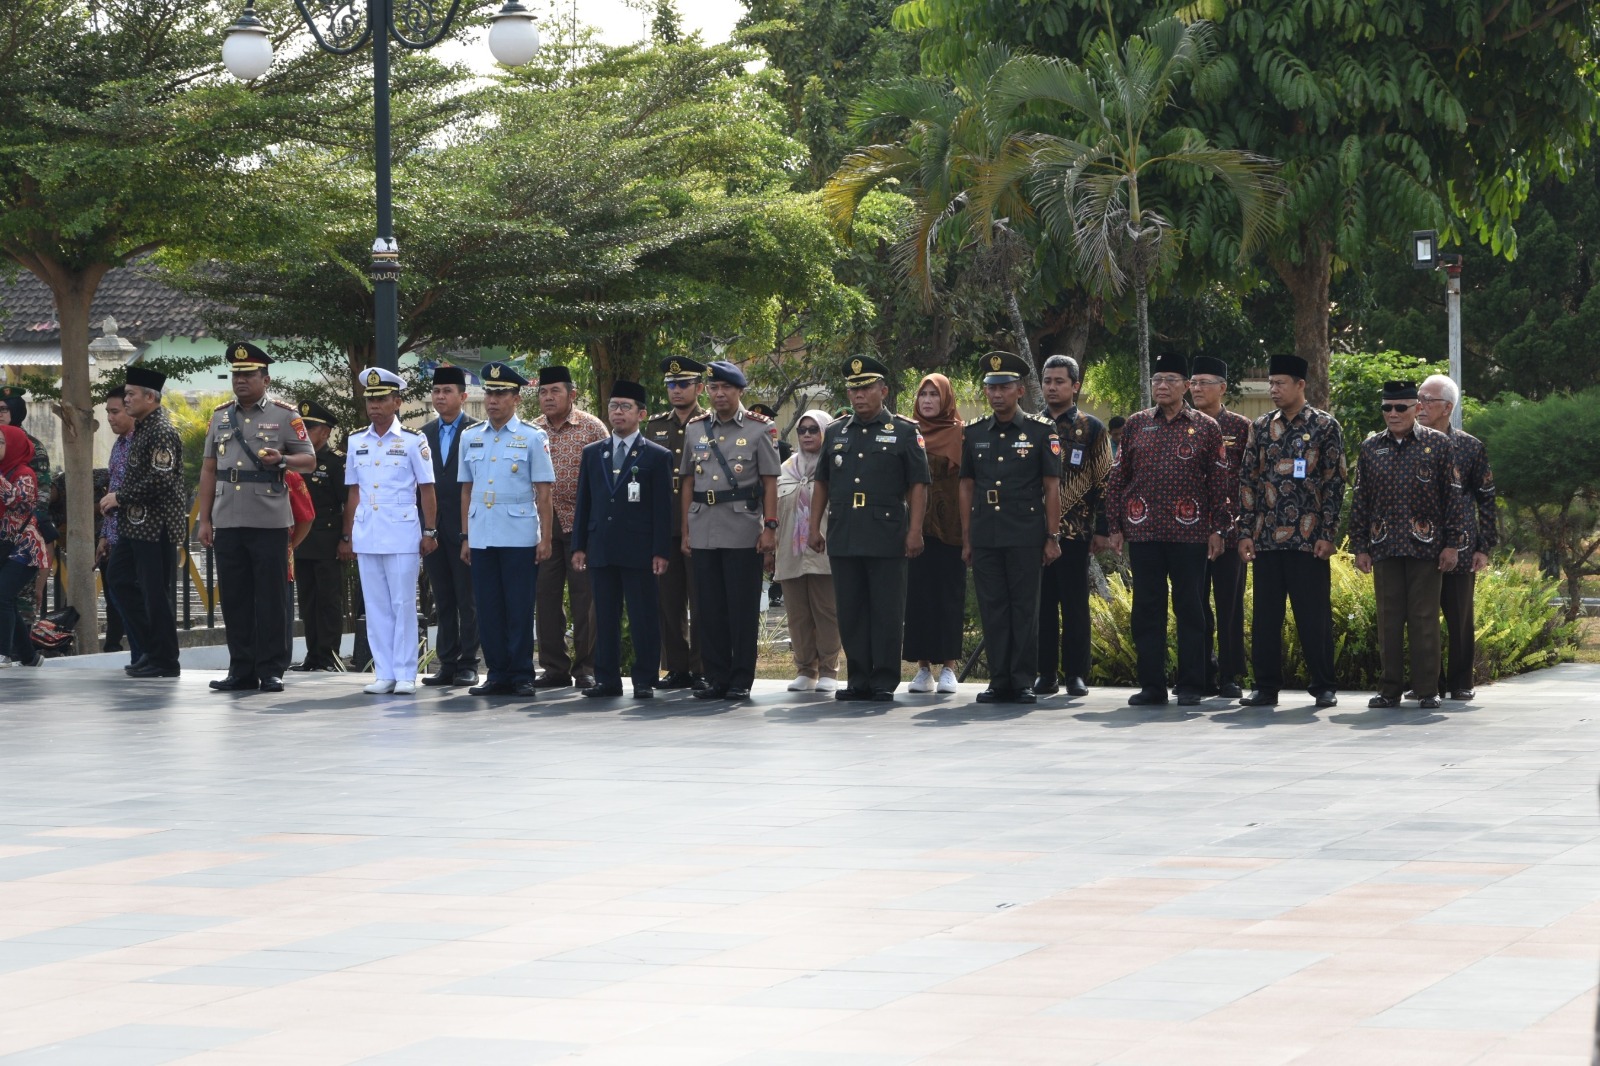 Ketua Pengadilan Negeri Yogyakarta Mengikuti Upacara Peringatan Serbuan Kotabaru 7 Oktober 1945 ke-78